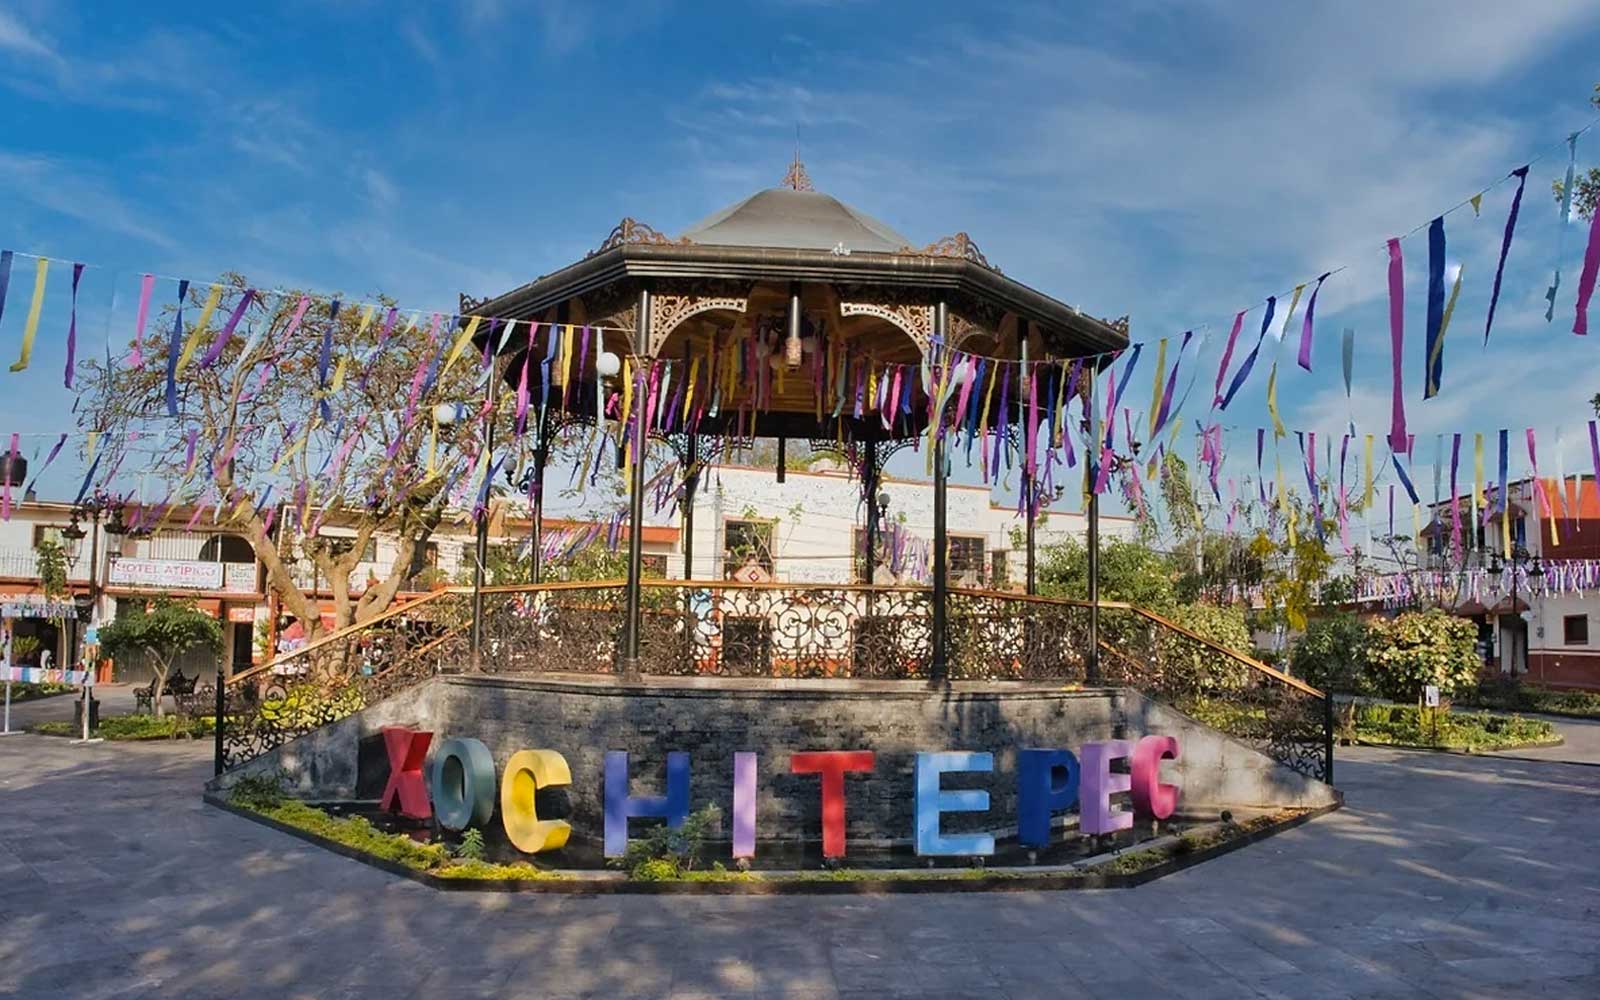 Xochitepec